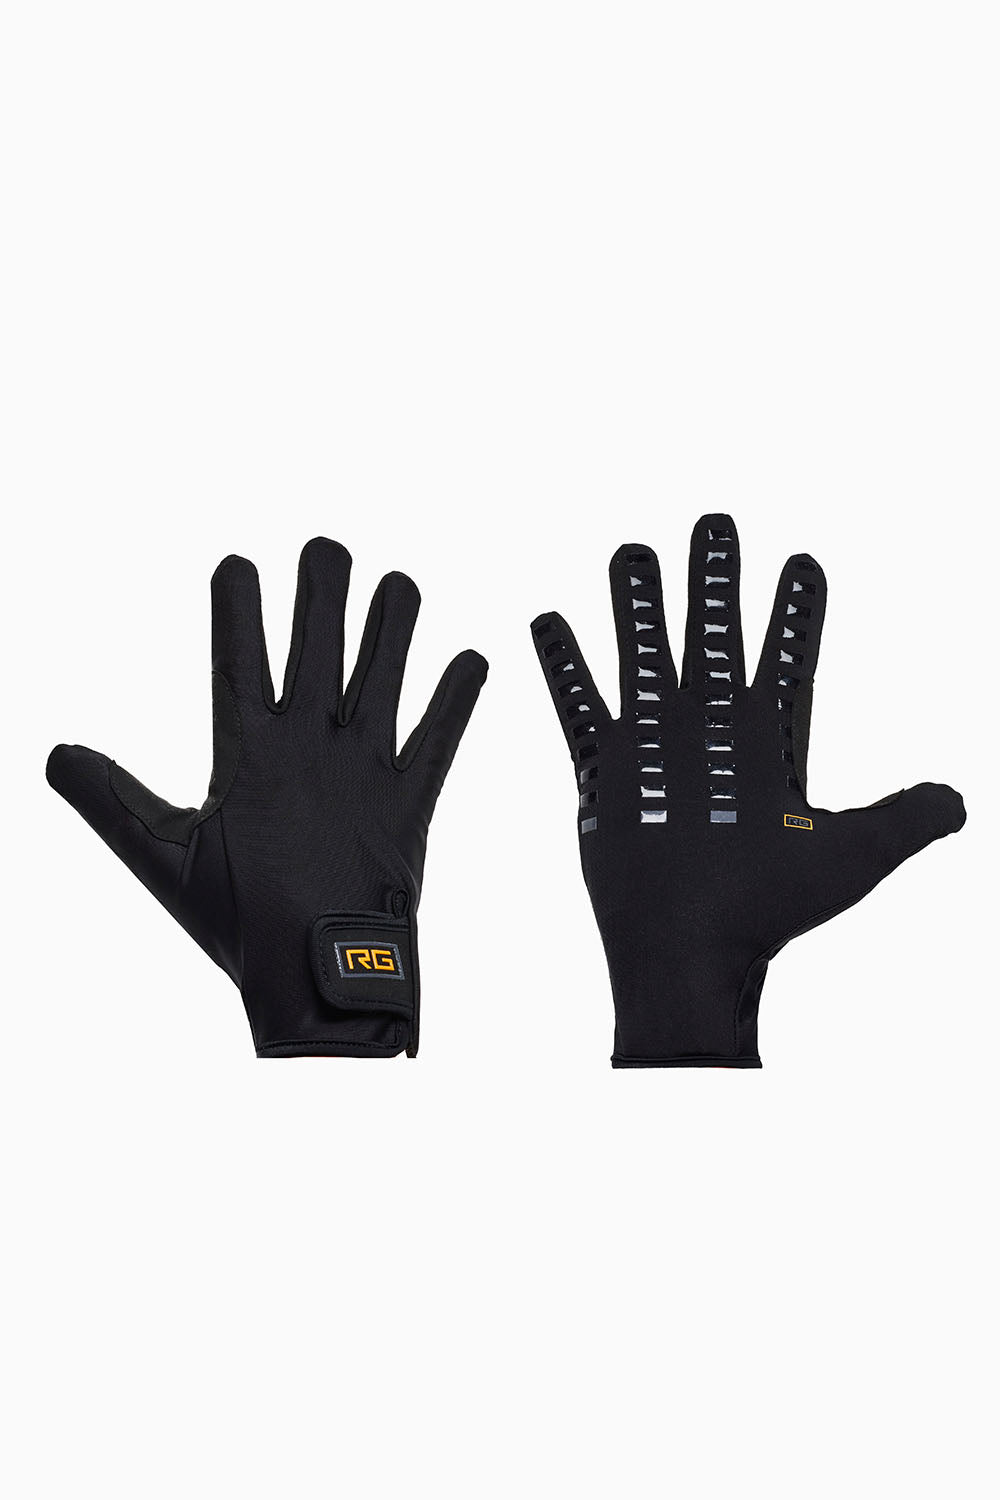 RG Gloves